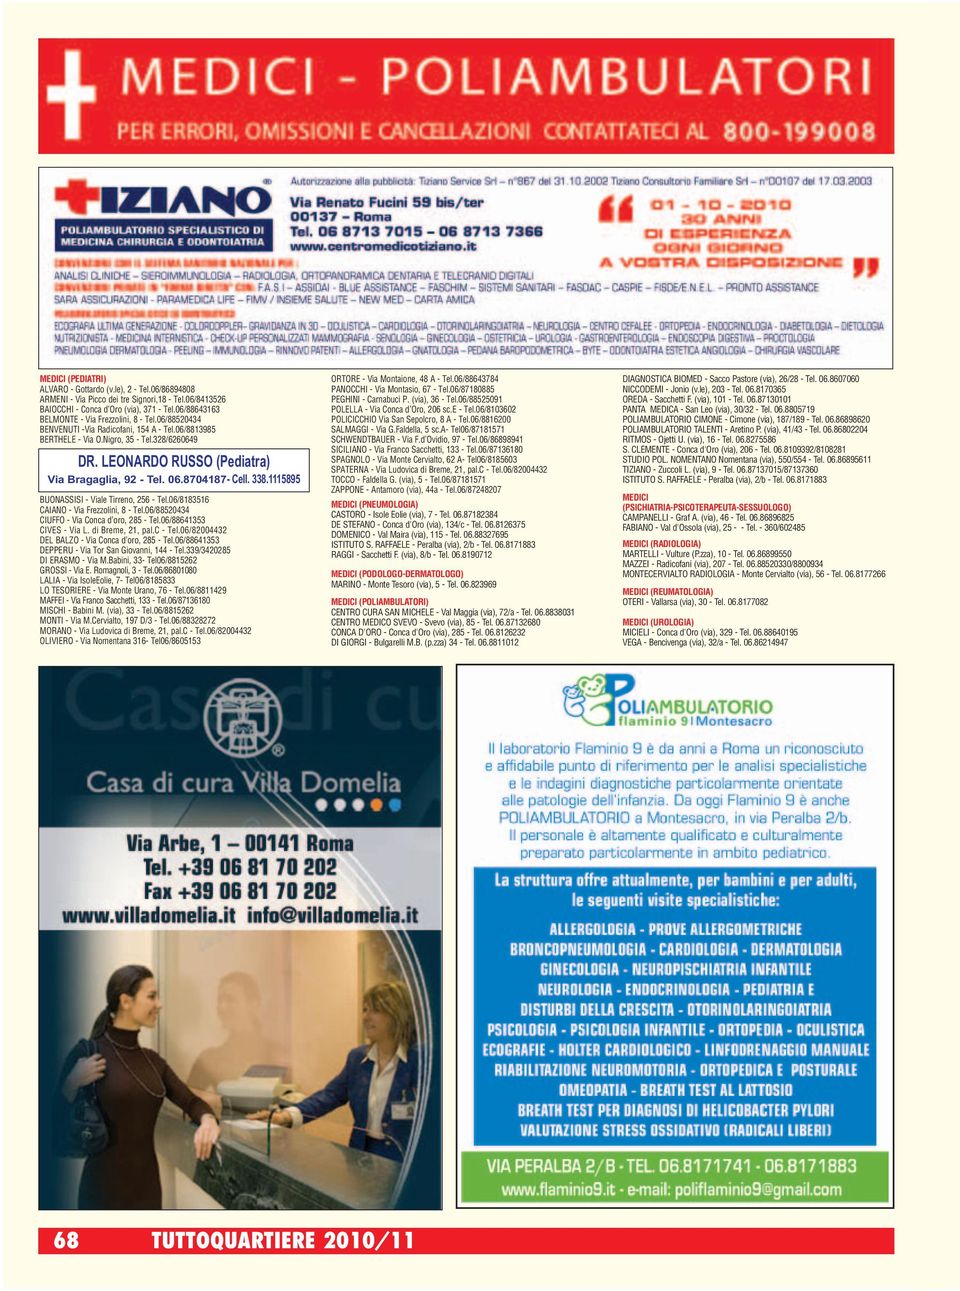 LEONARDO RUSSO (Pediatra) Via Bragaglia, 92 - Tel. 06.8704187- Cell. 338.1115895 BUONASSISI - Viale Tirreno, 256 - Tel.06/8183516 CAIANO - Via Frezzolini, 8 - Tel.